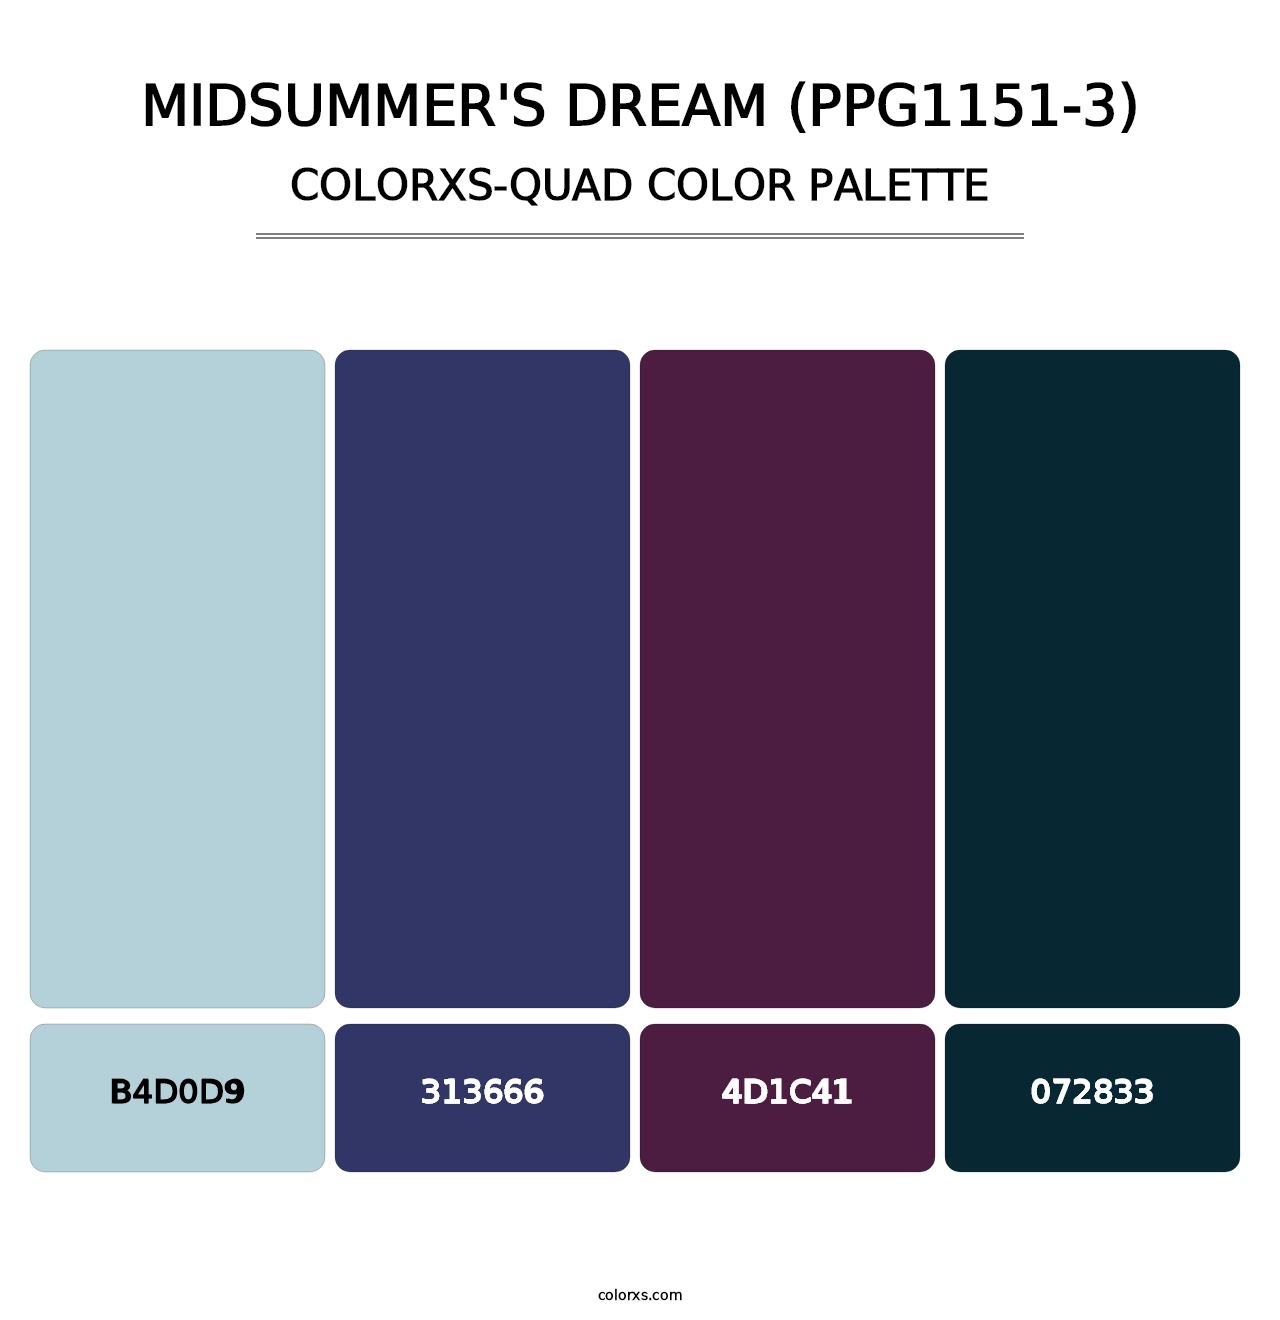 Midsummer's Dream (PPG1151-3) - Colorxs Quad Palette